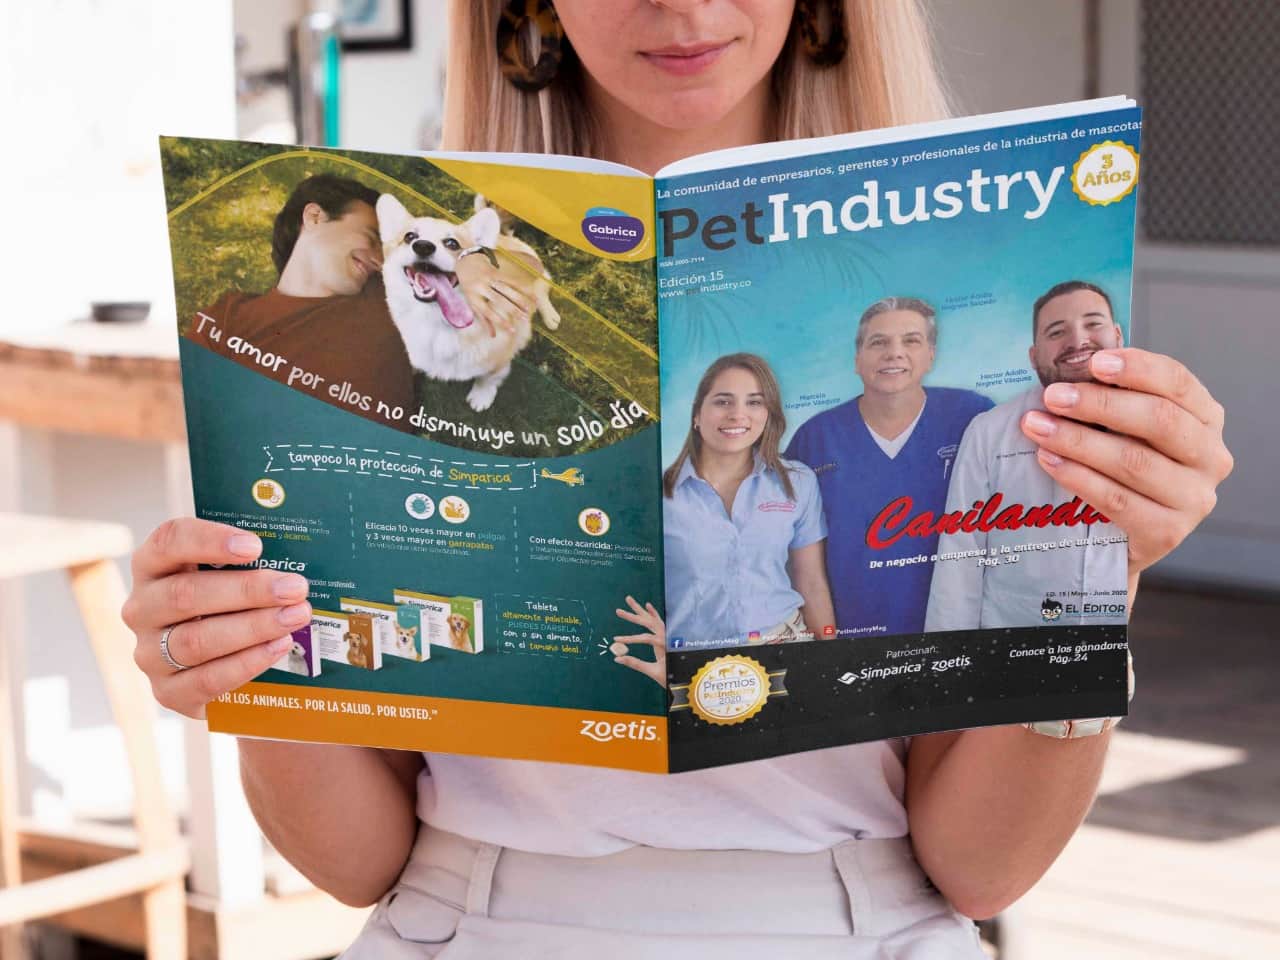  Pet Industry edición #15